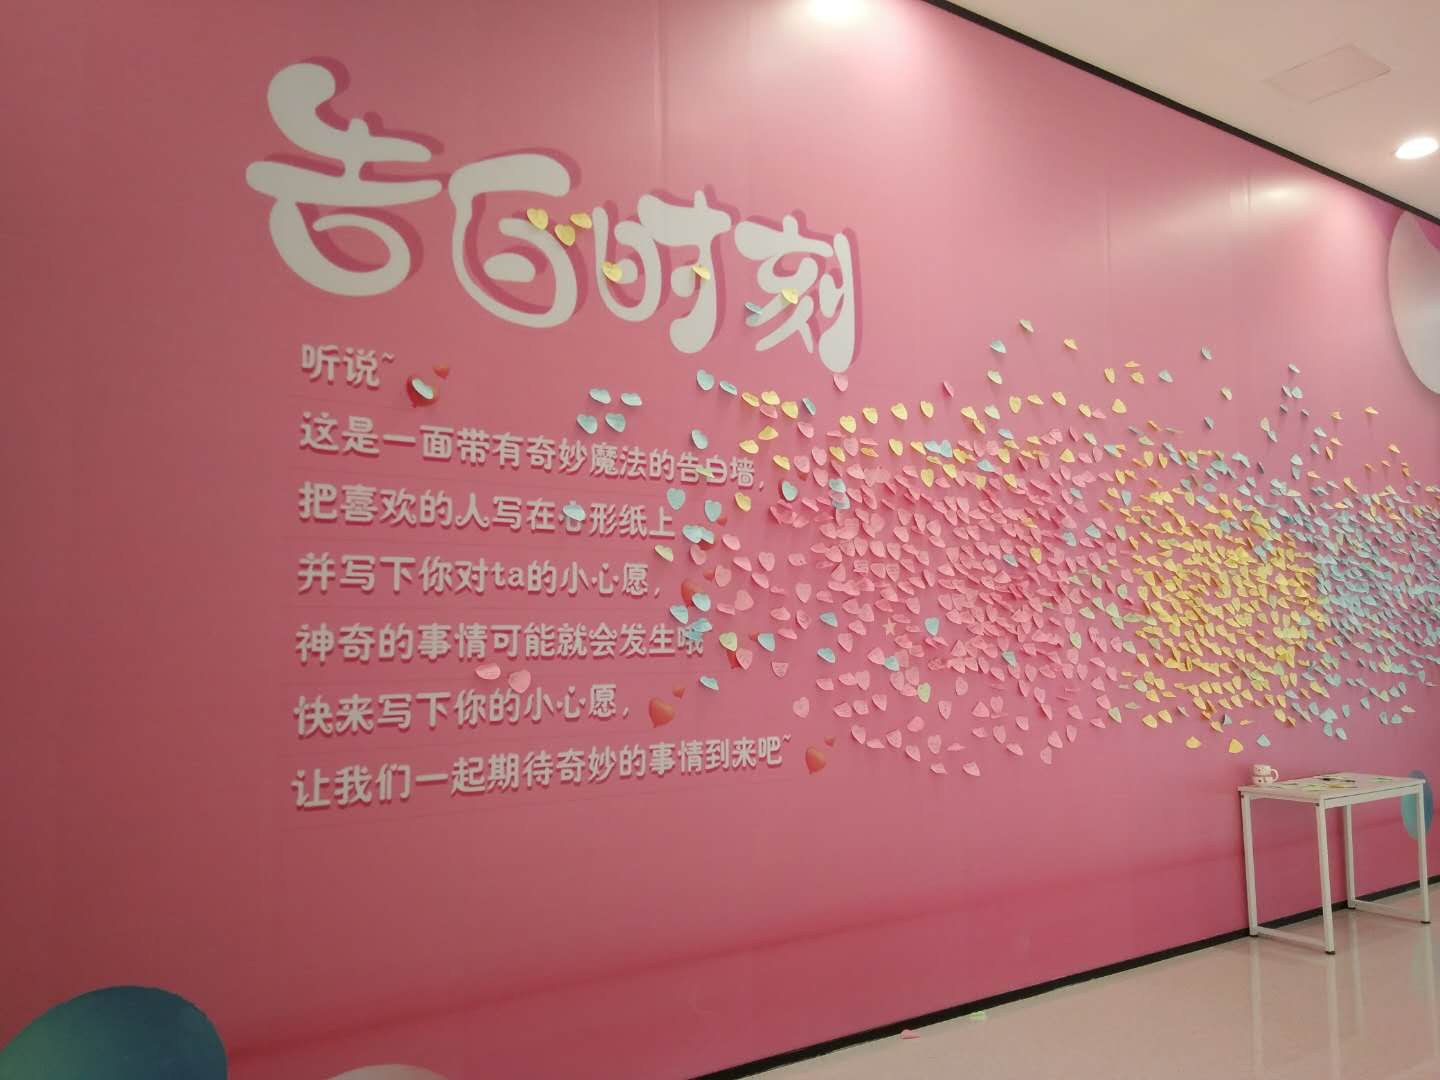 表白墙、相亲会、LED大屏……520郑州购物中心这样玩